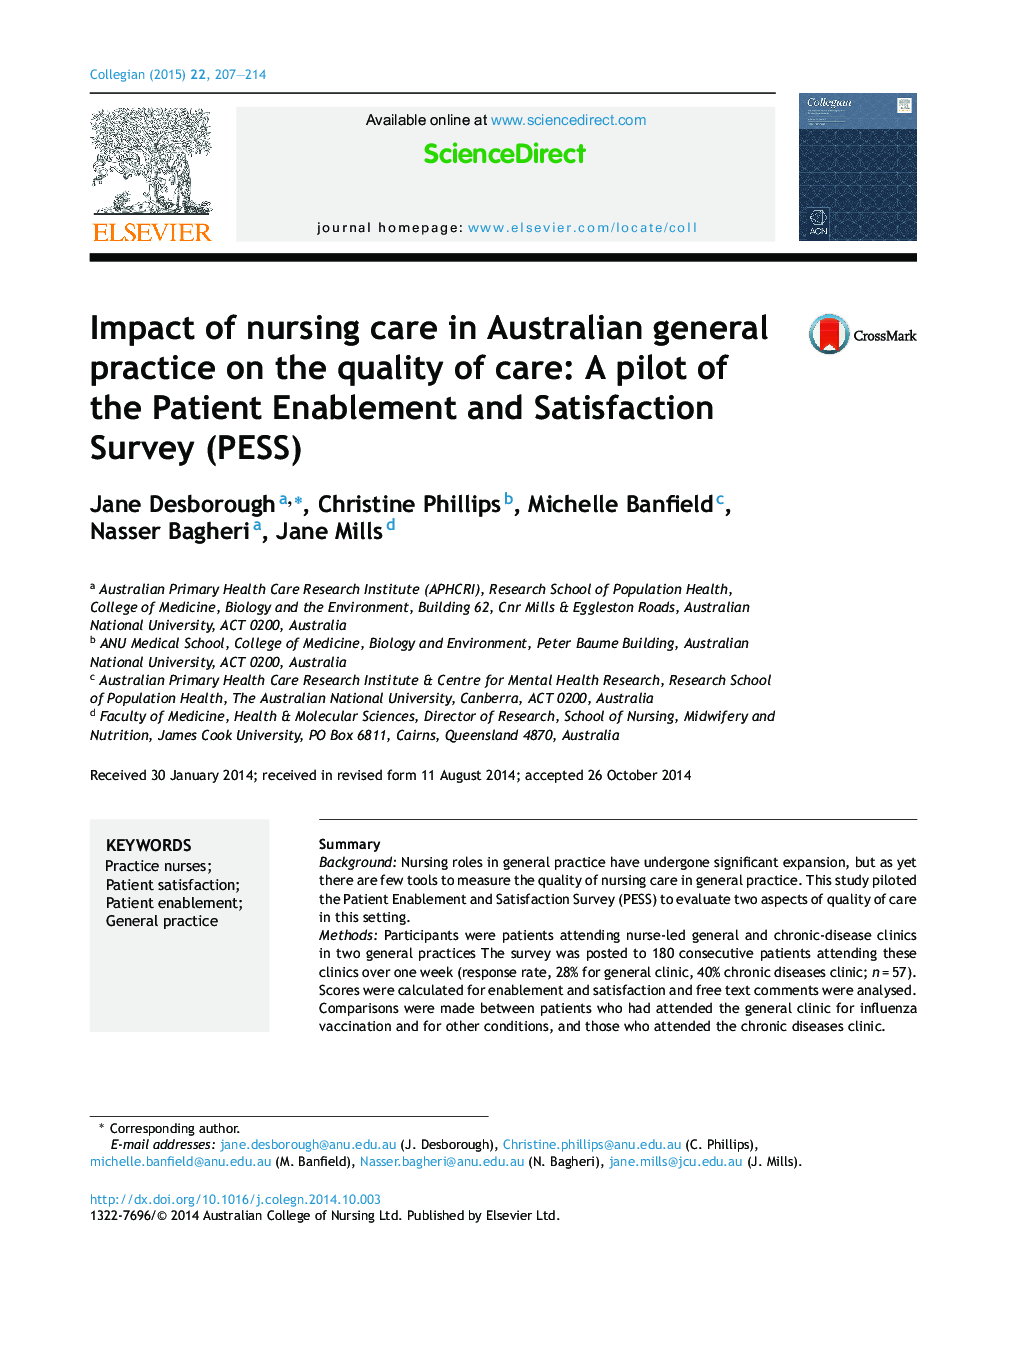 تأثیر مراقبت پرستاری در عمل عمومی استرالیا بر کیفیت مراقبت: یک پایلوت از پرسشنامه امکان سنجی و رضایت بیمار (PESS)